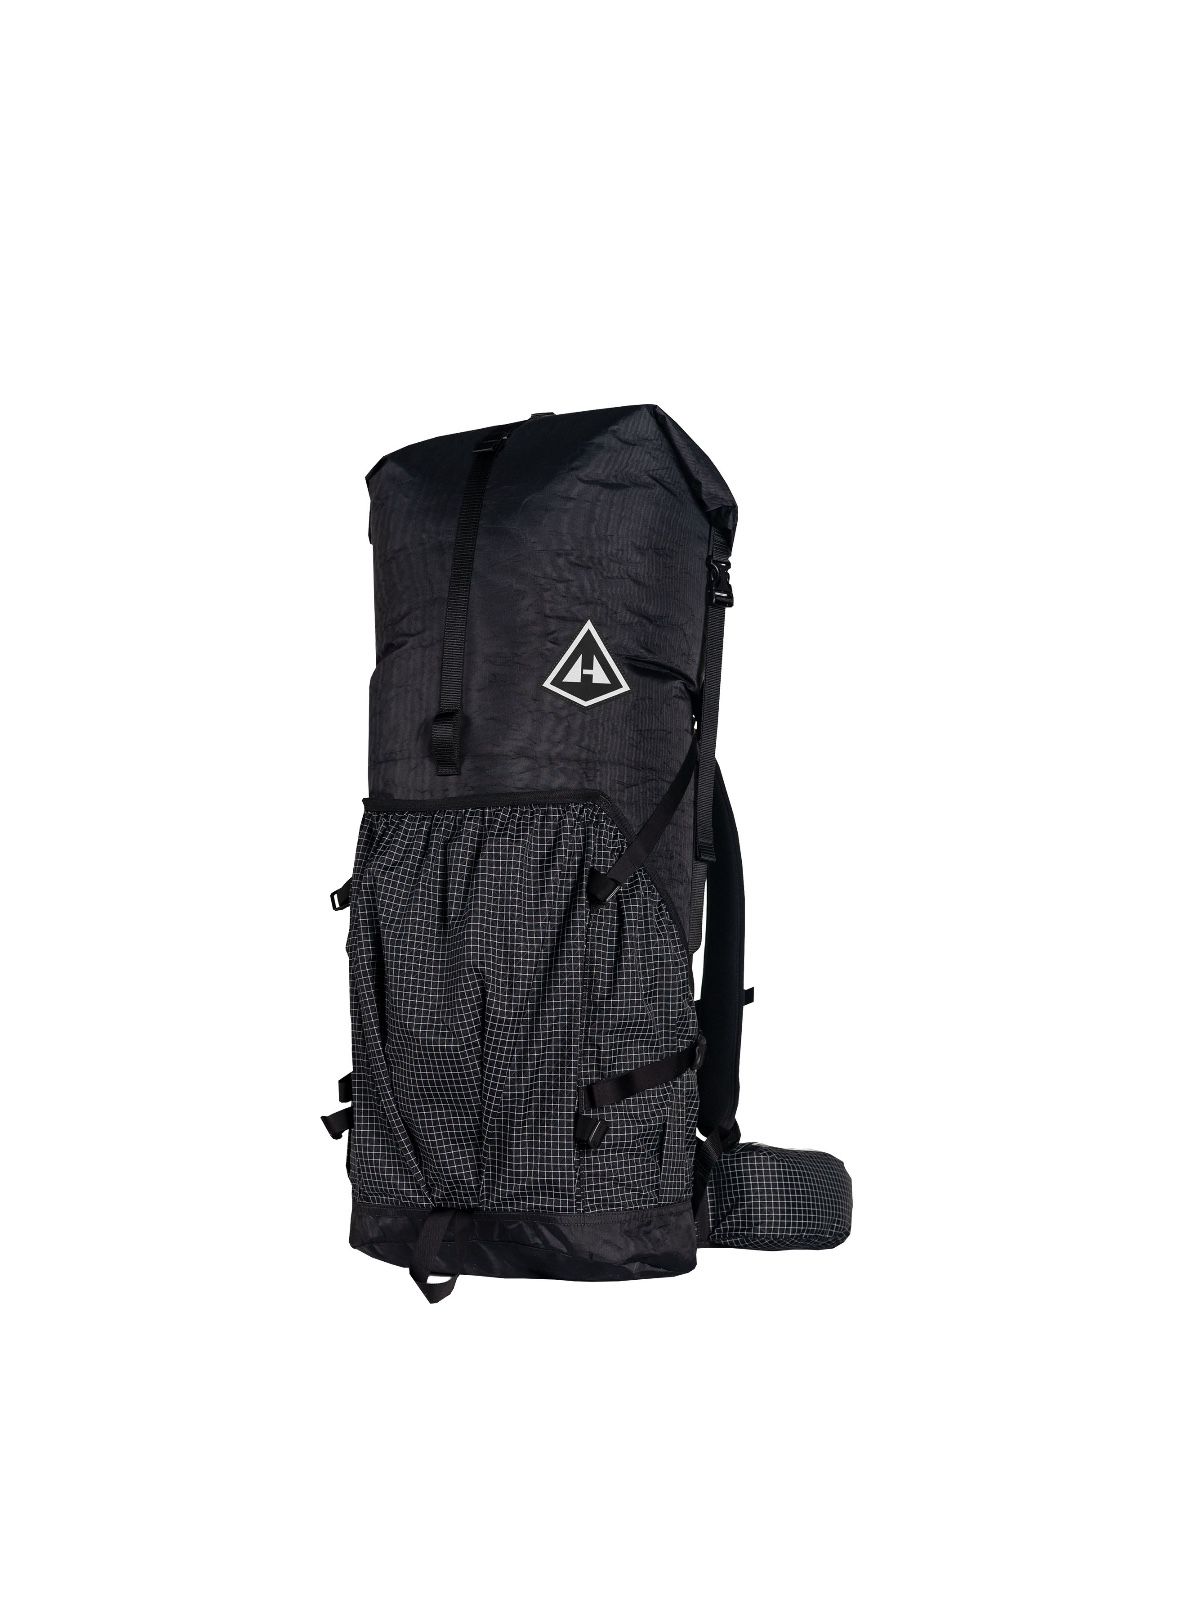 Hyperlite Mountain Gear 55L Southwest Backpack - Black